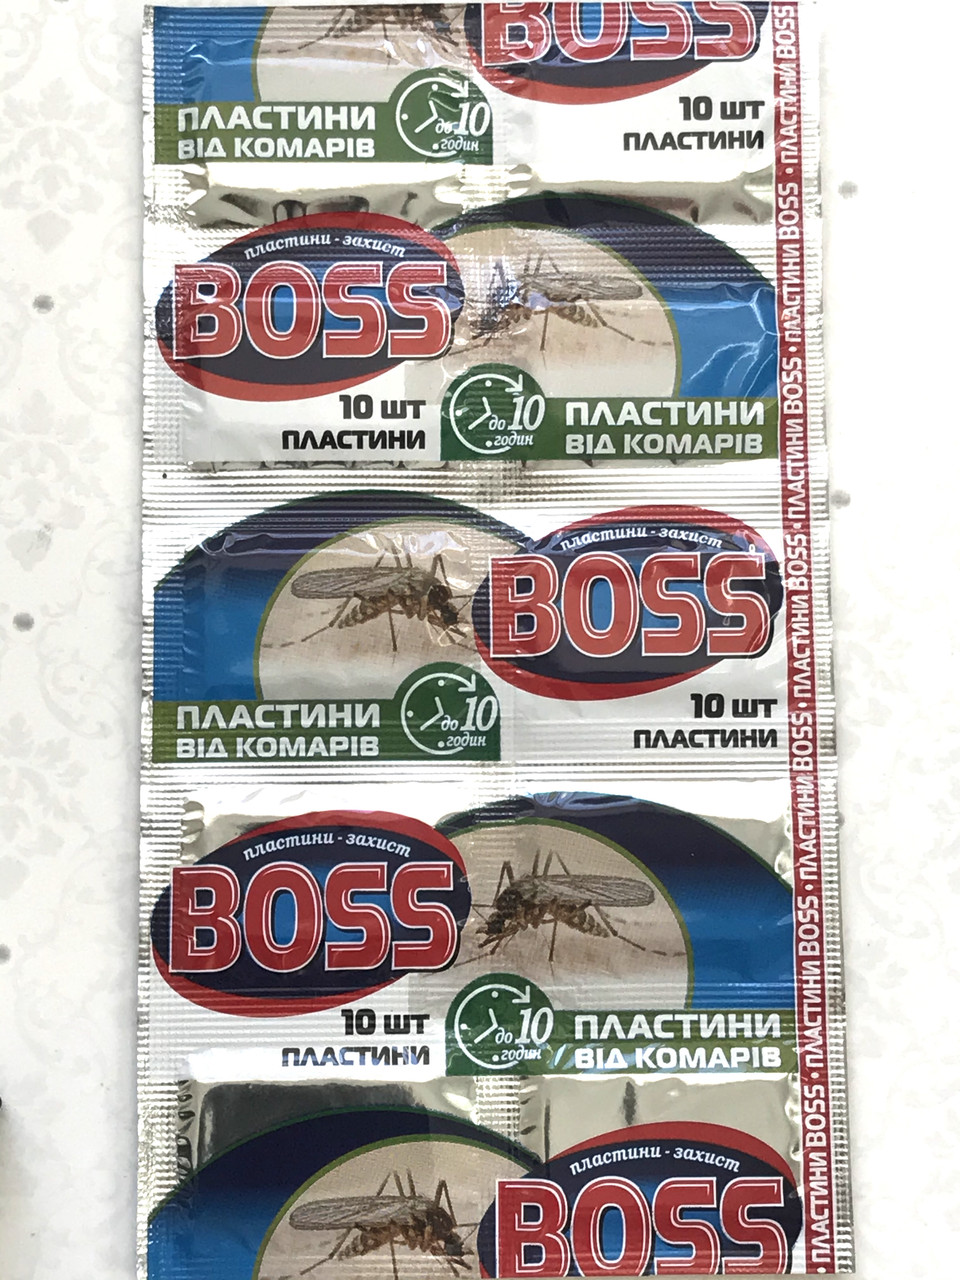 Пластини від комарів «BOSS»